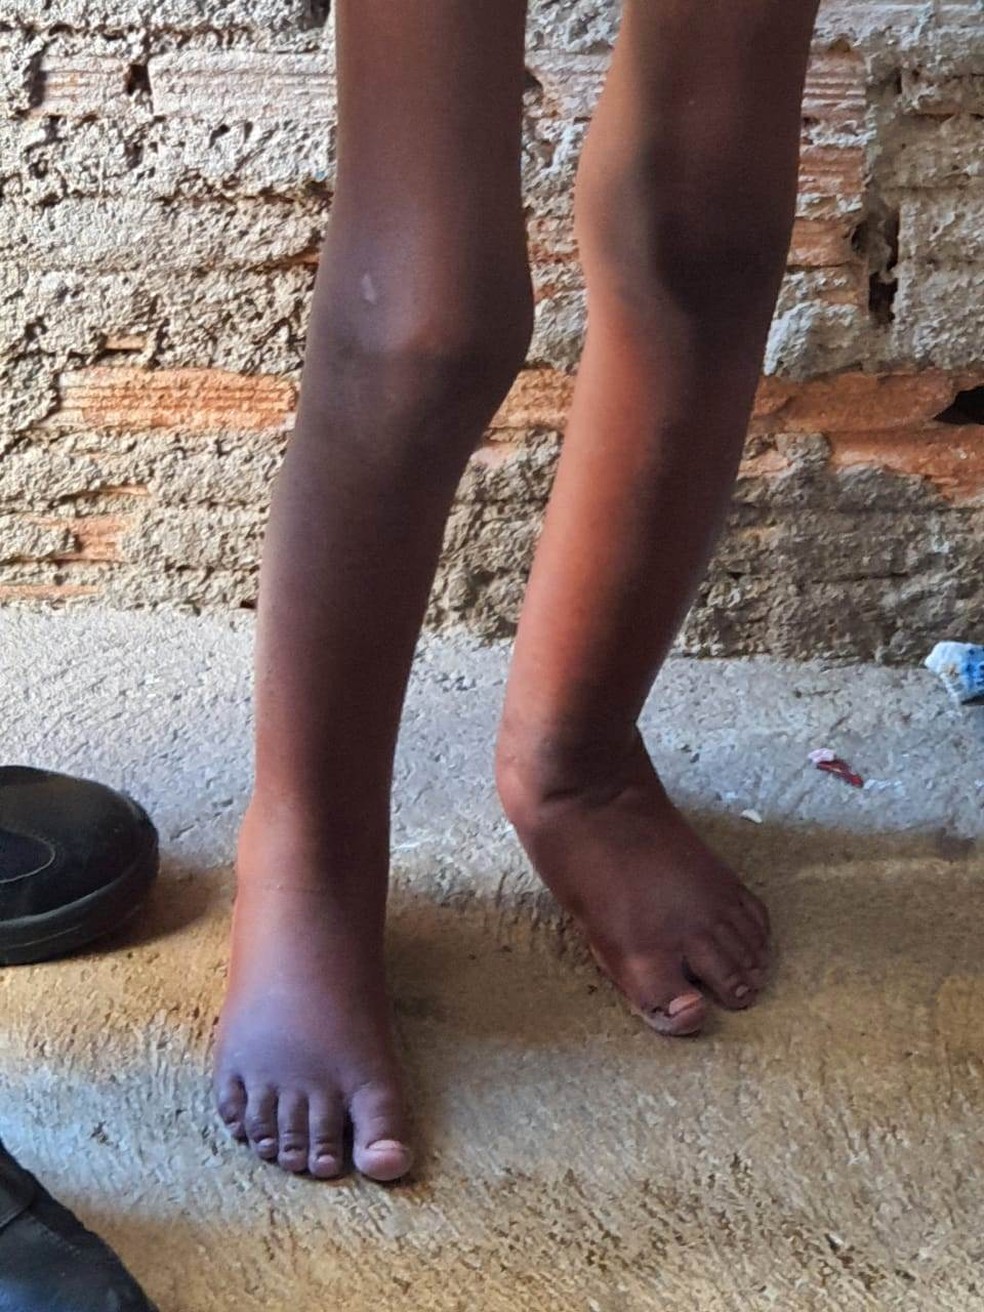 Polícia resgata menino de 11 anos torturado vivendo em barril 2